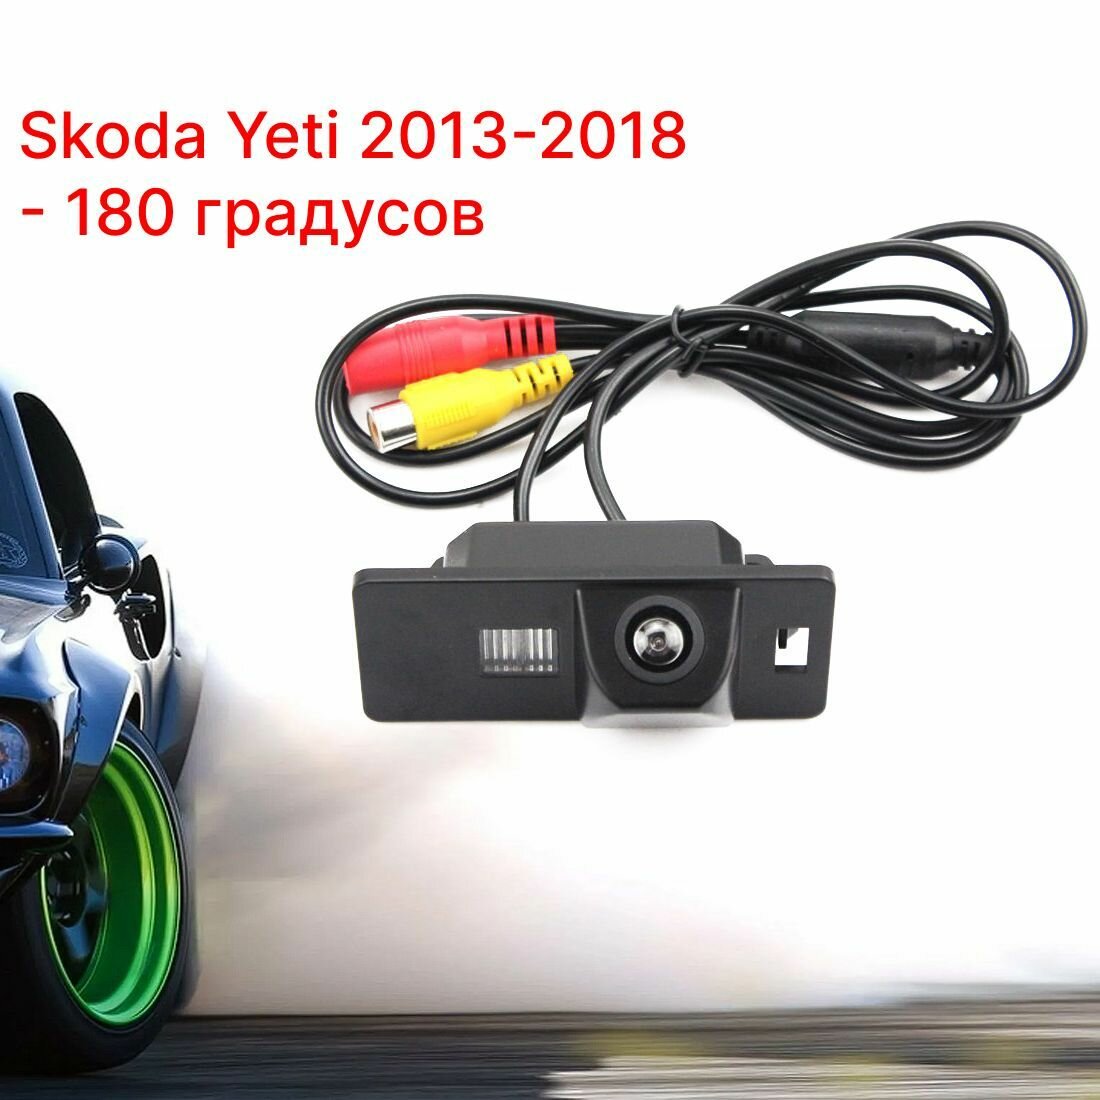 Камера заднего вида Шкода Йети - 180 градусов (Skoda Yeti - 2013-2018)